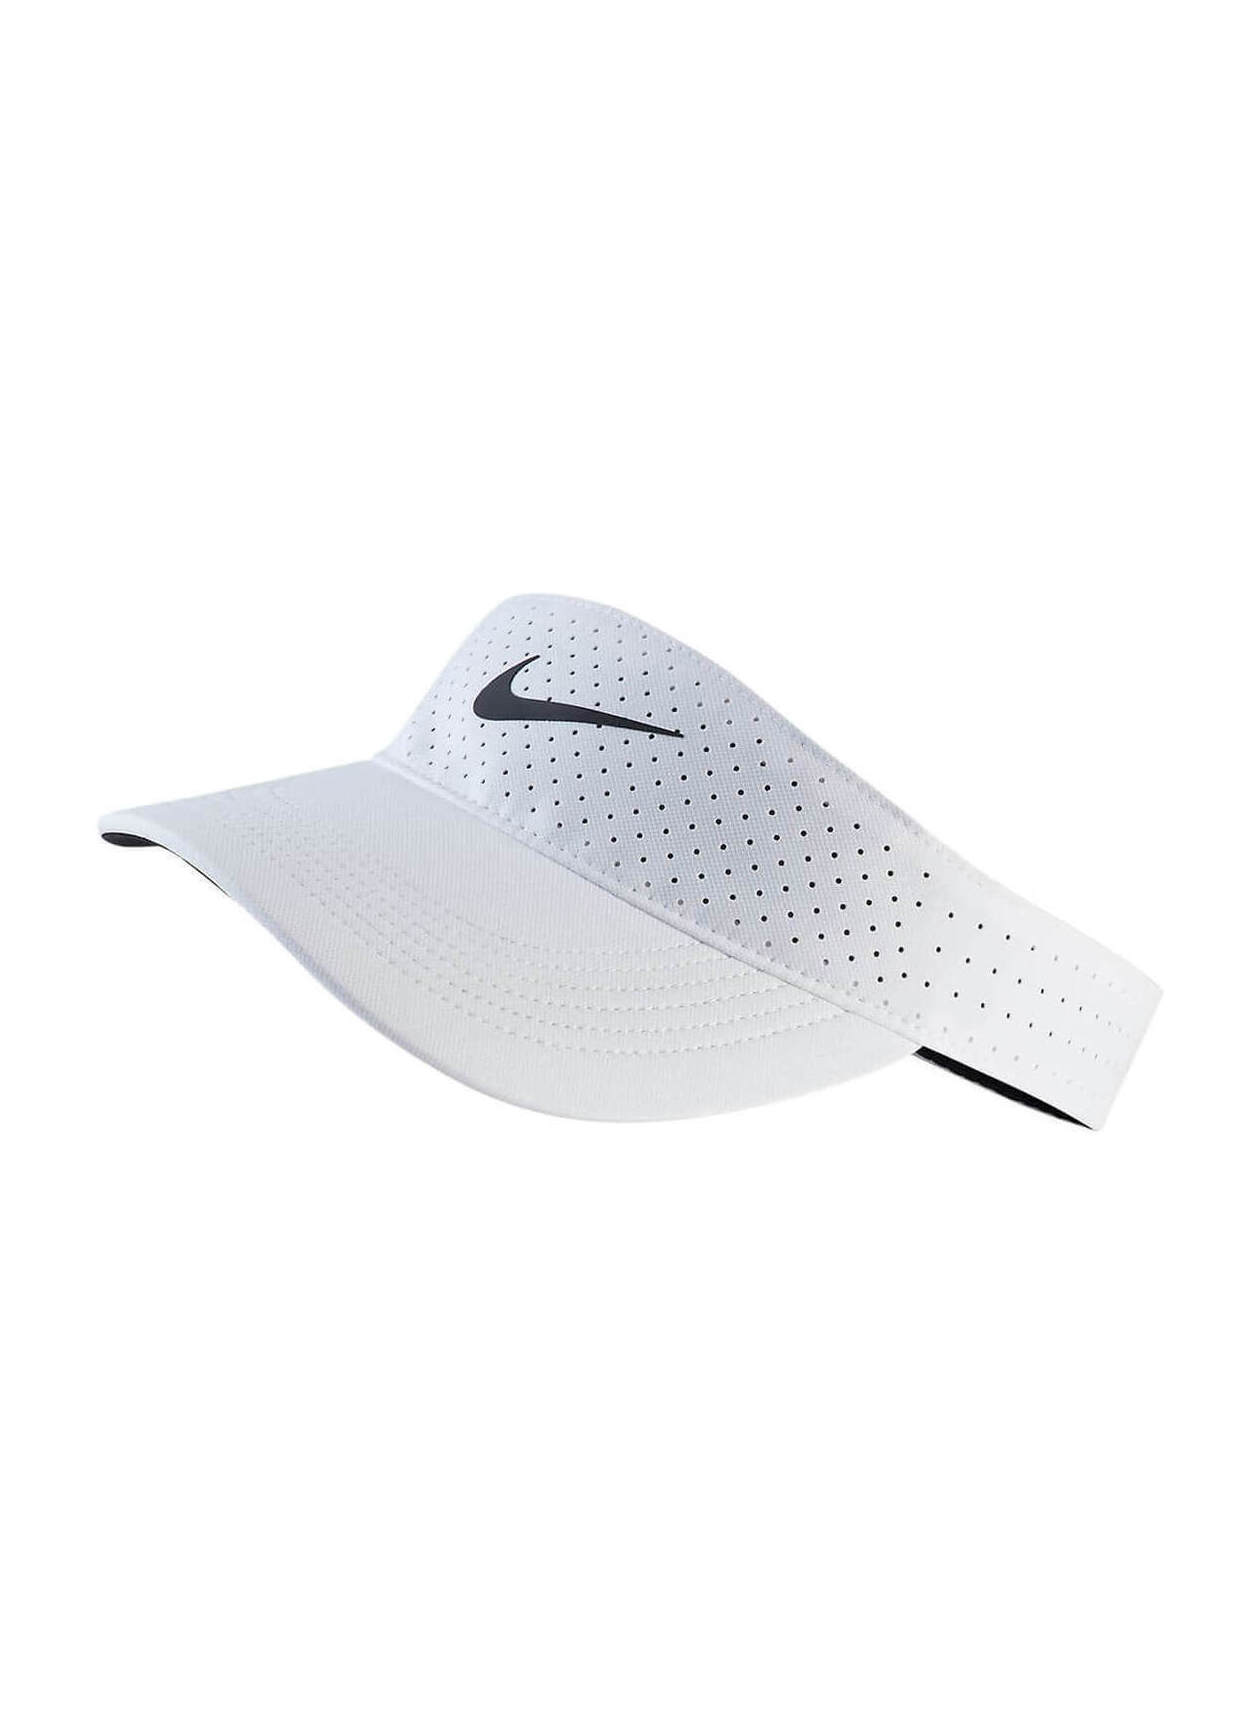 Nike White / Black Dri-FIT AeroBill Visor